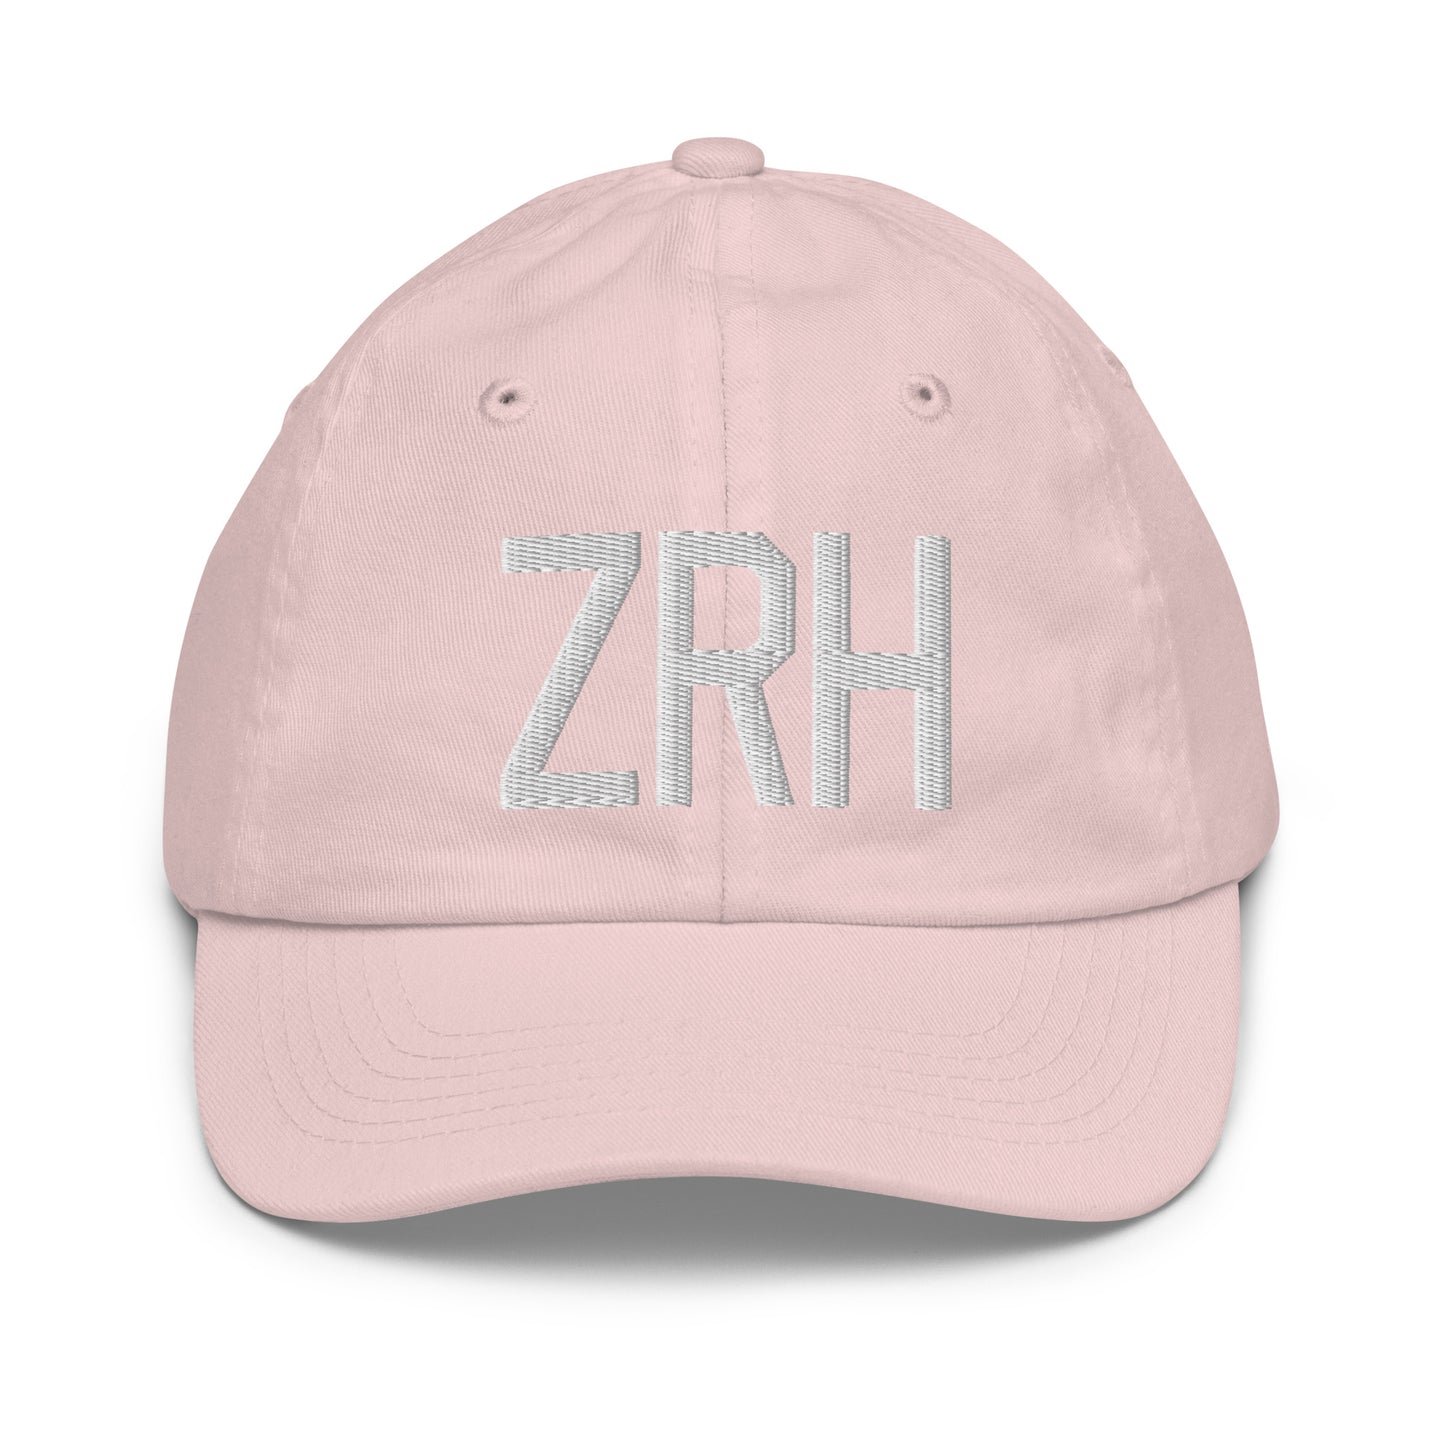 Airport Code Kid's Baseball Cap - White • ZRH Zurich • YHM Designs - Image 31